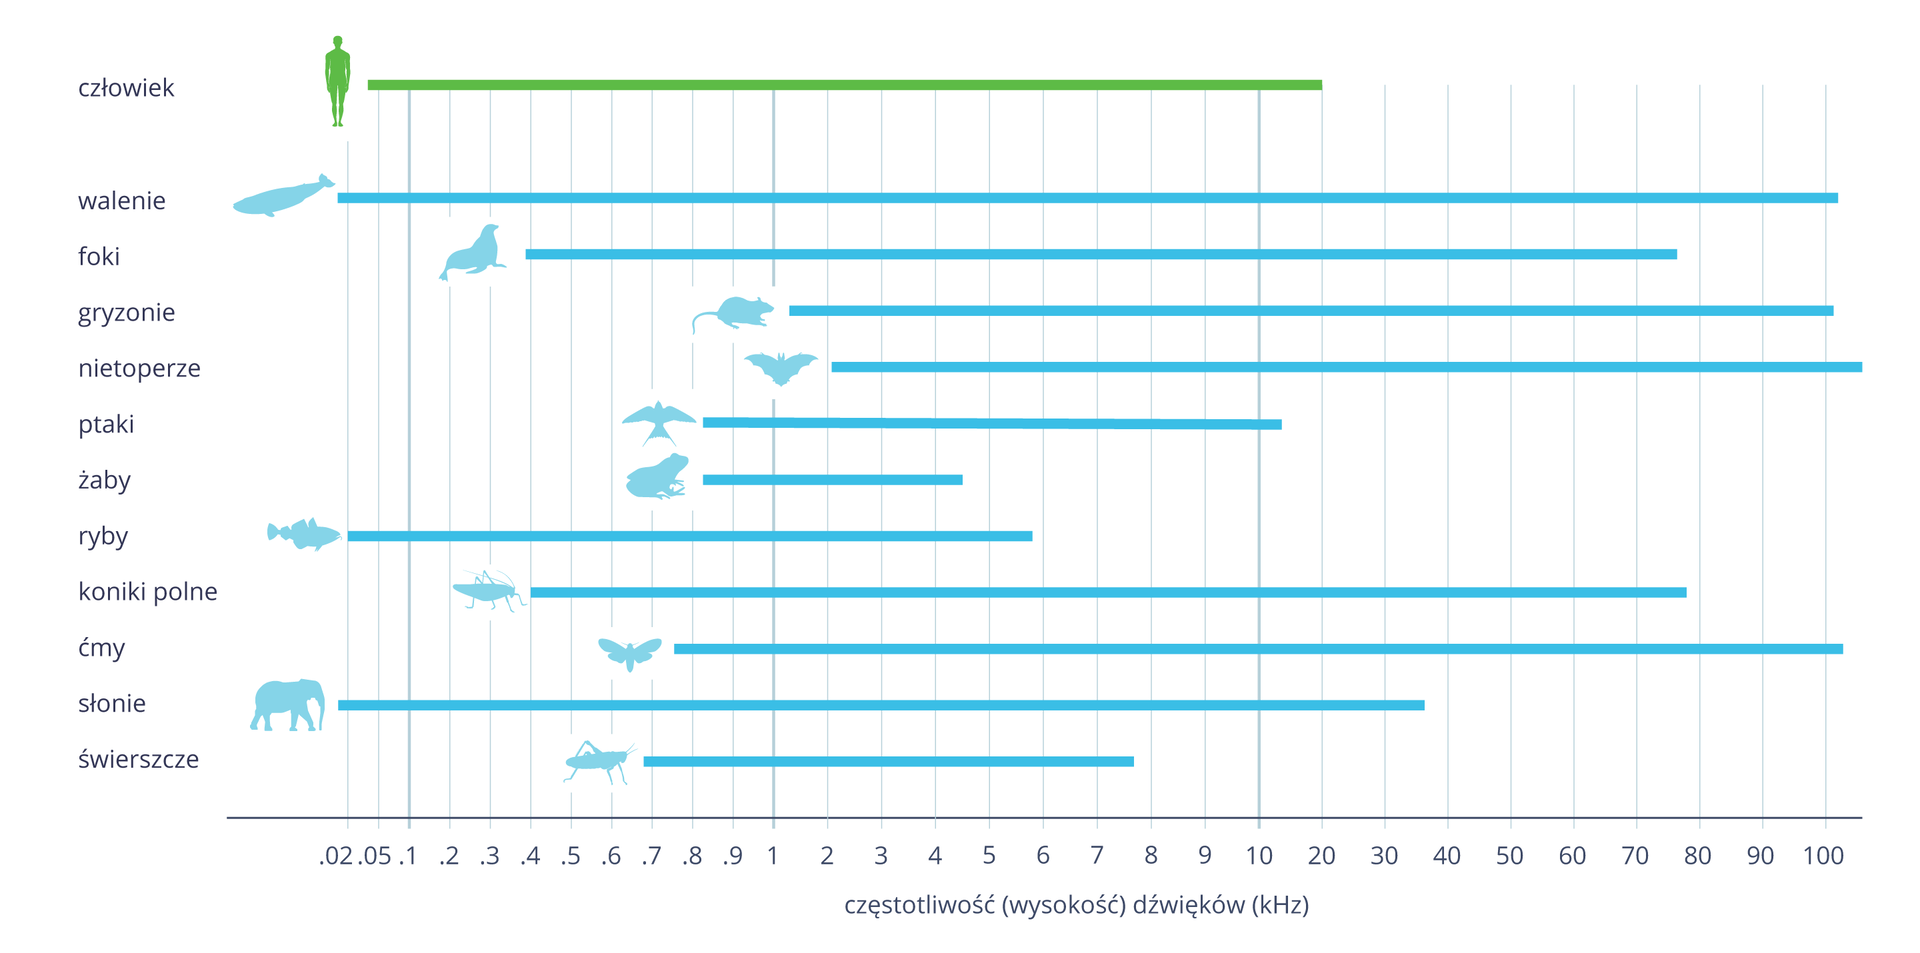 Ilustracja przedstawia w formie poziomych linii zakres słyszenia dźwięków przez człowieka (zielona) i niektórych zwierząt (niebieskie). U dołu skala wysokości dźwięków w hercach, od dwóch dziesiątych do stu. Przy liniach błękitne sylwetki zwierząt. Największy zakres słyszalności mają walenie, najmniejszy żaby. Wiele zwierząt słyszy dźwięki o wysokiej częstotliwości (ultradźwięki), na przykład gryzonie, nietoperze i ćmy.